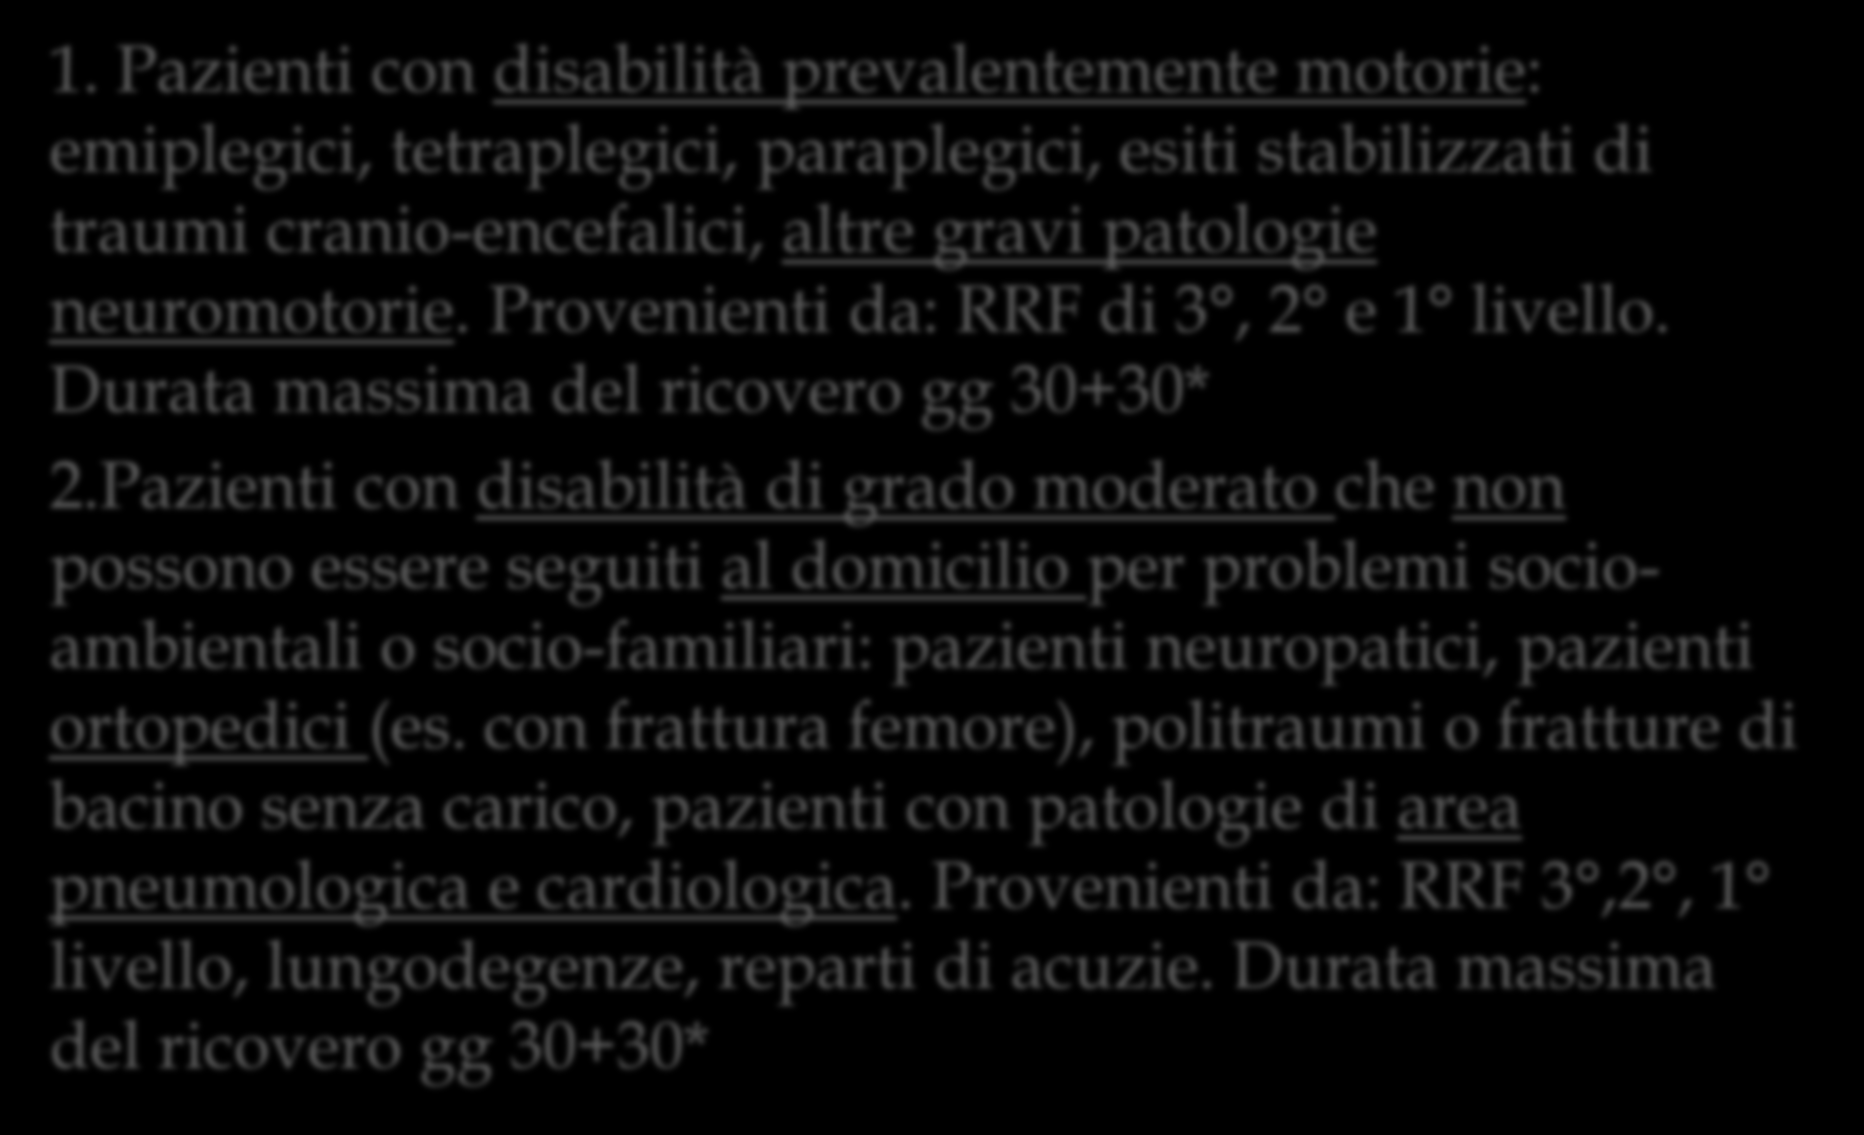 DGR 6/2013: Moderata complessità clinico-assistenziale 1.